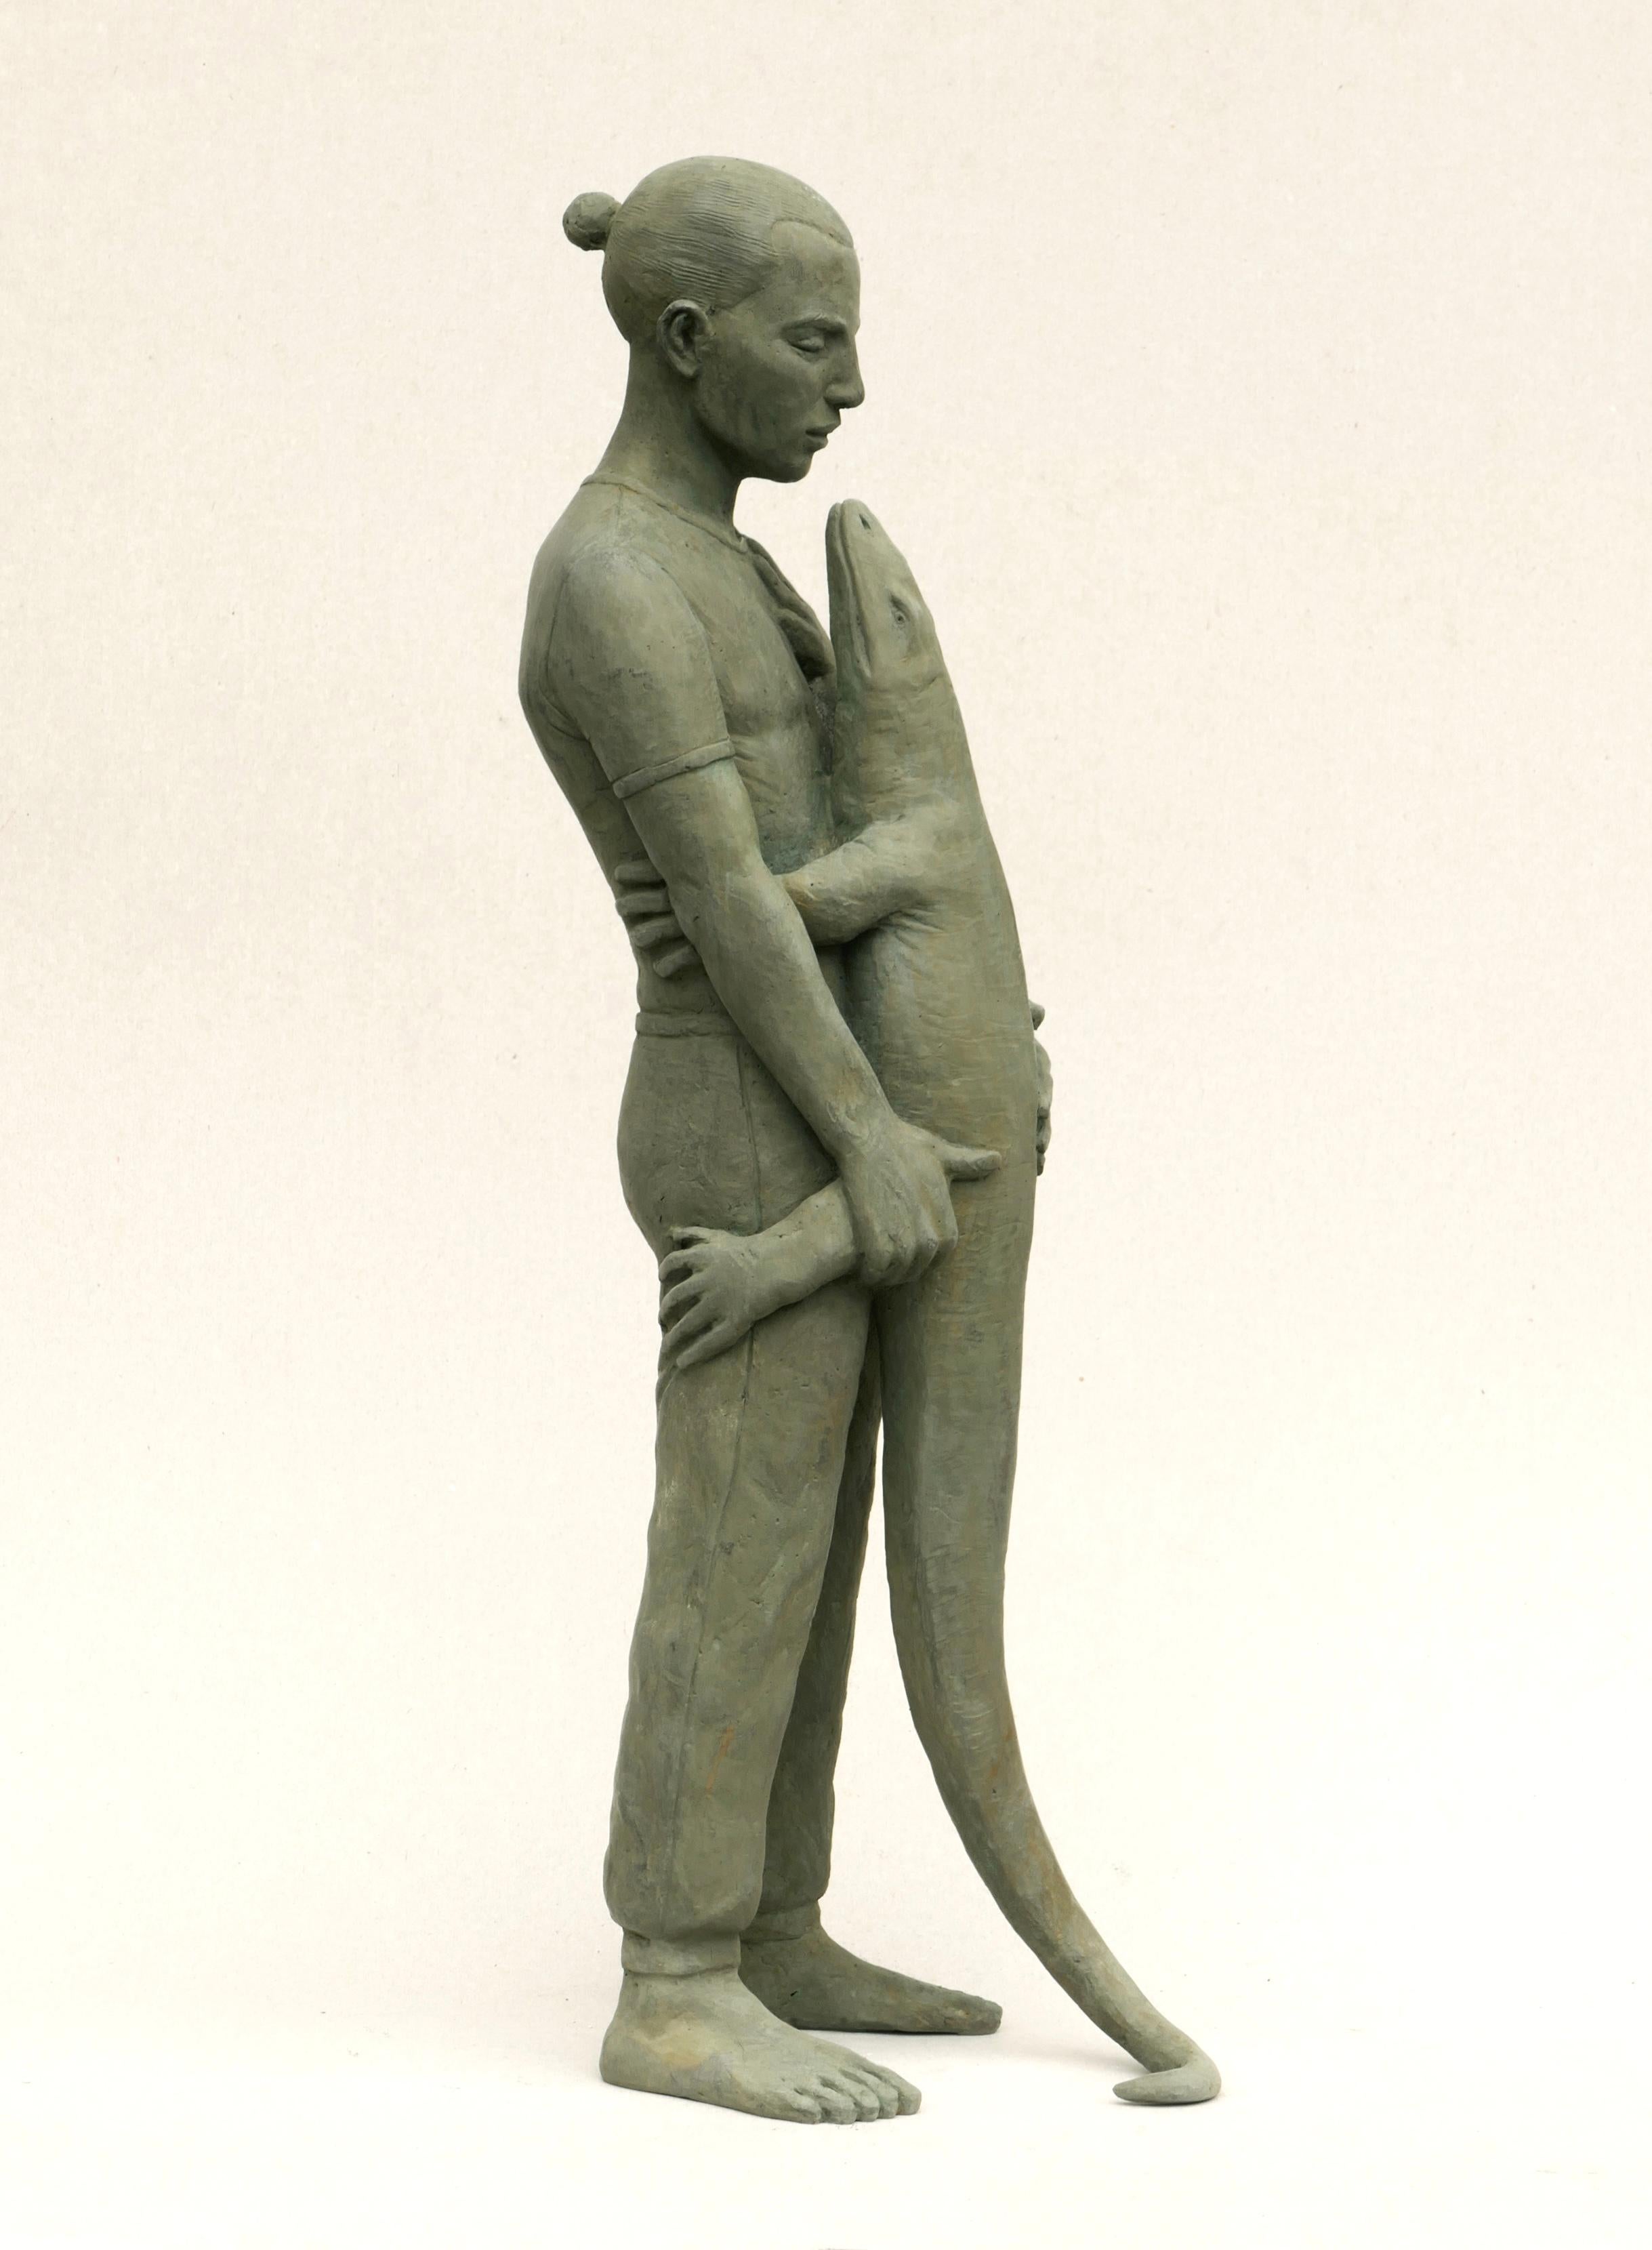 Erwin Meijer Figurative Sculpture - Varaan Monitor Lizard Girl Bronze Sculpture Animal Modern In Stock 